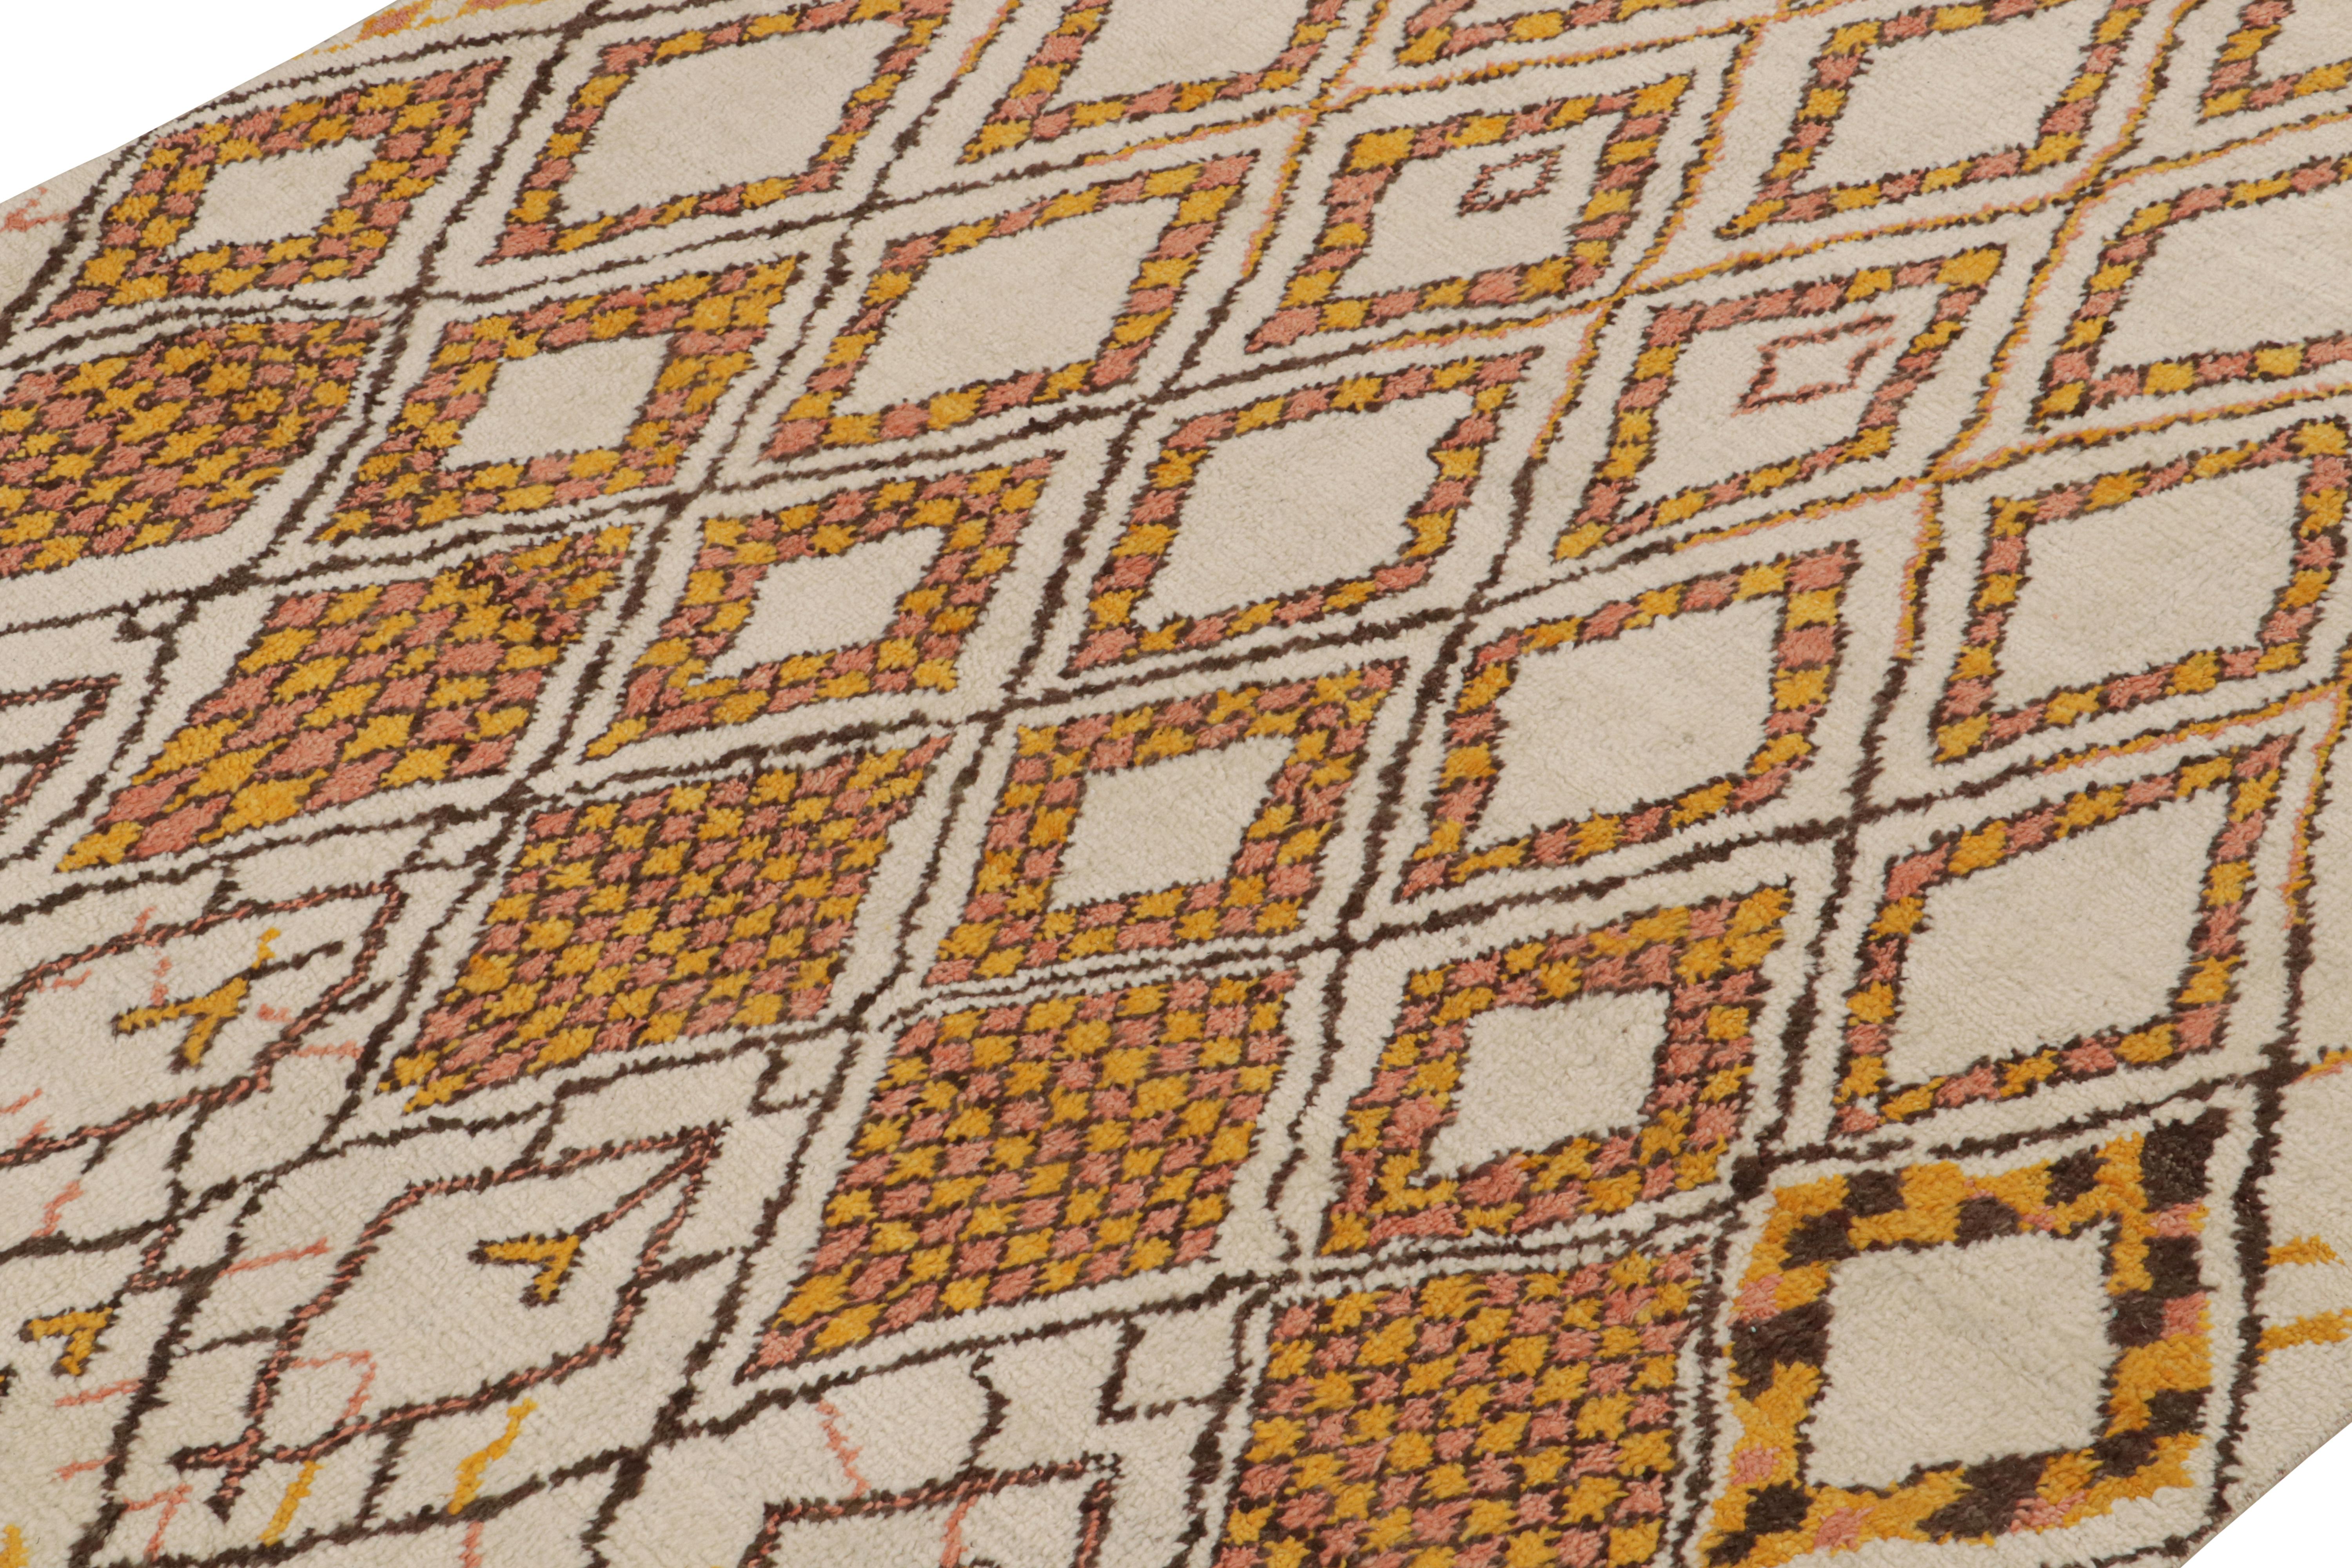 Indien Rug & Kilim's Moroccan Style Rug in Beige-Brown & Orange Geometric Patterns (tapis de style marocain à motifs géométriques beige, marron et orange) en vente